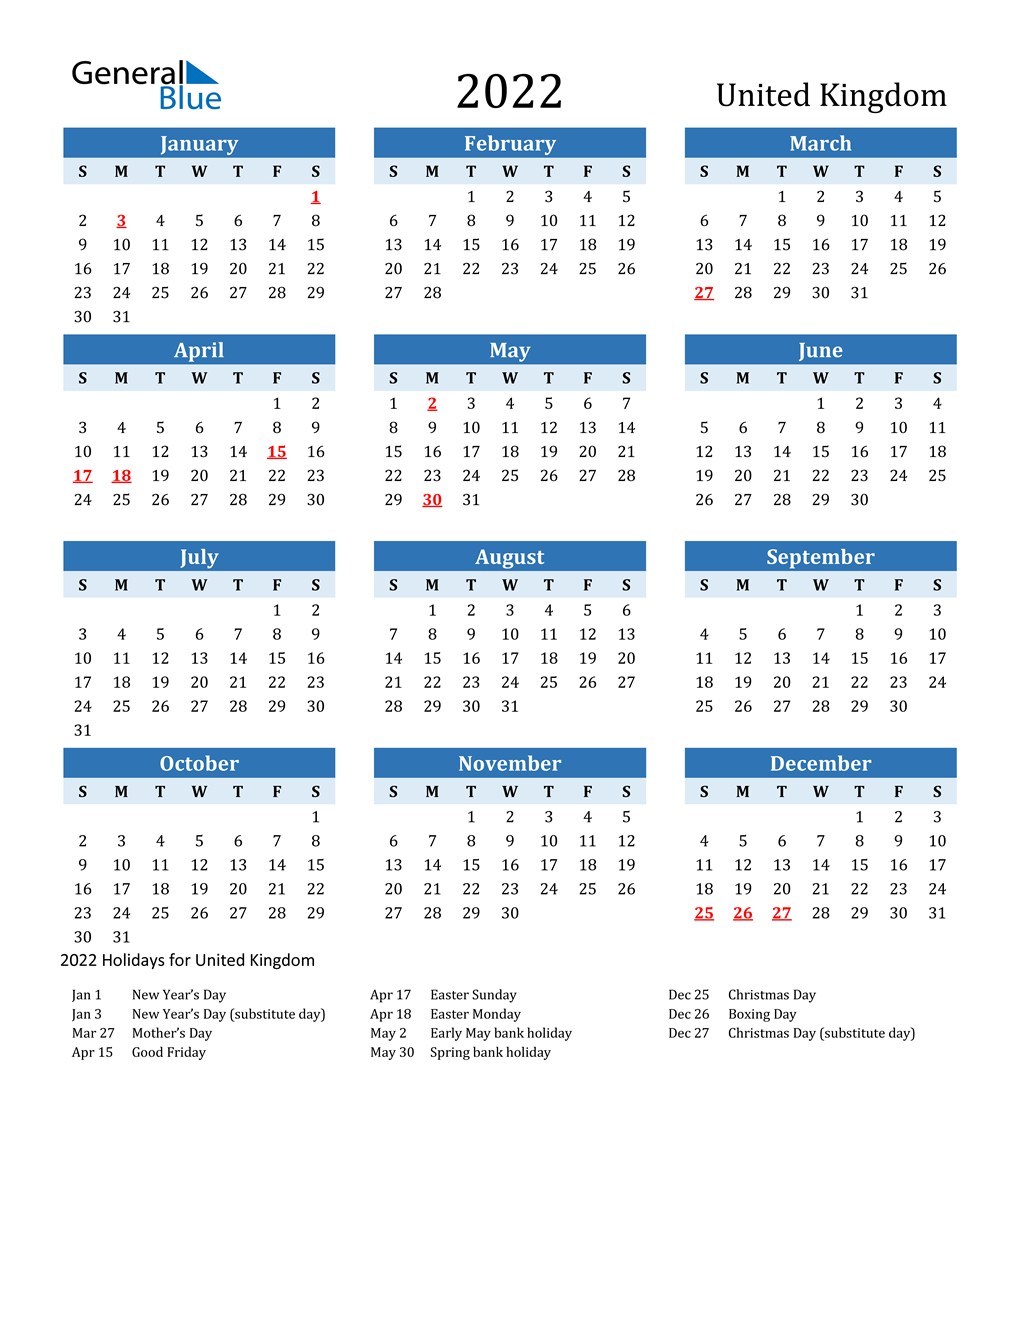 20 United Kingdom Calendar with Holidays